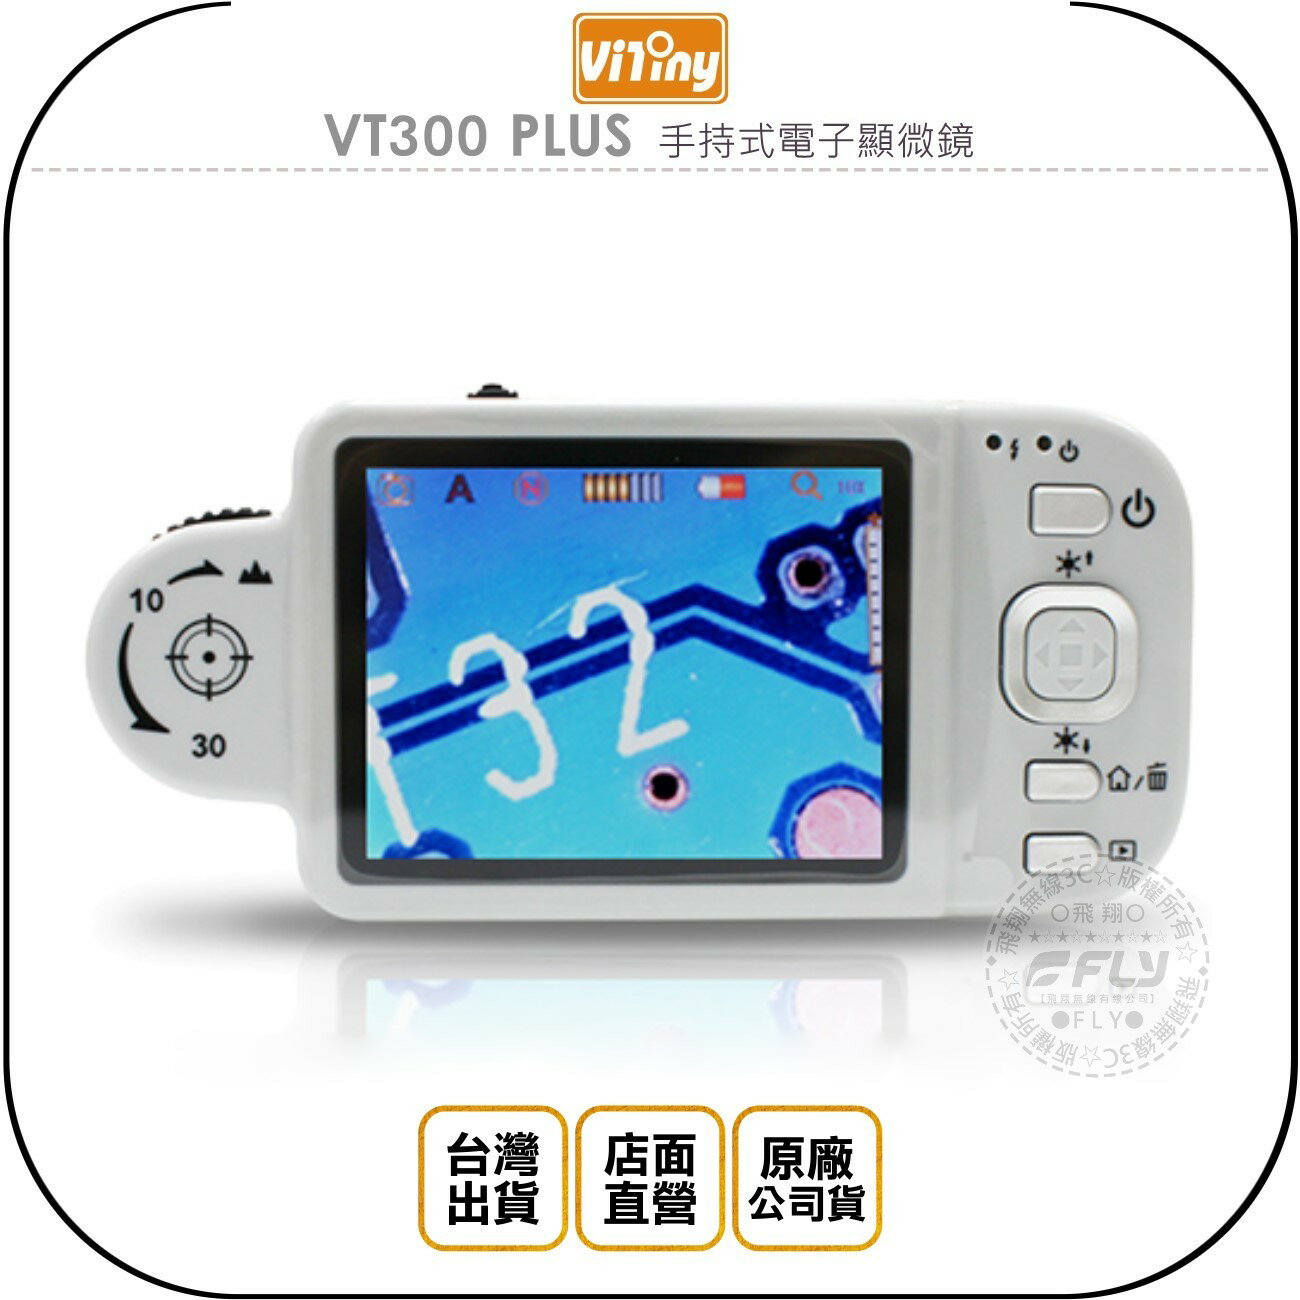 《飛翔無線3C》Vitiny VT300 PLUS 手持式電子顯微鏡◉公司貨◉螢幕顯示◉即時拍照◉錄影功能